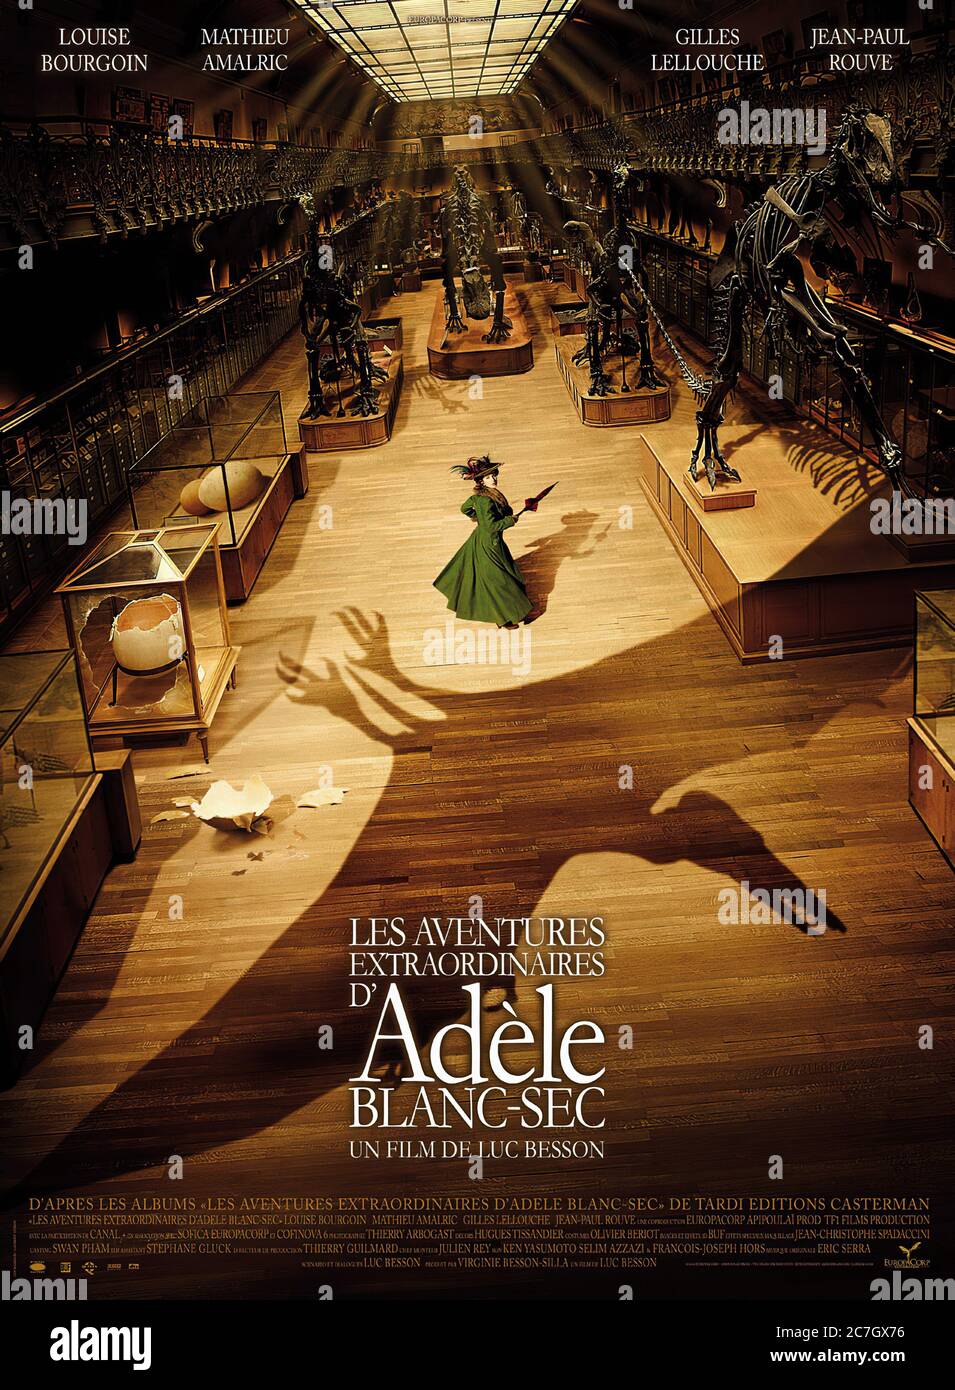 Les Aventures Extraordinaires d'Adèle Blanc-Sec - Movie Poster Stock Photo